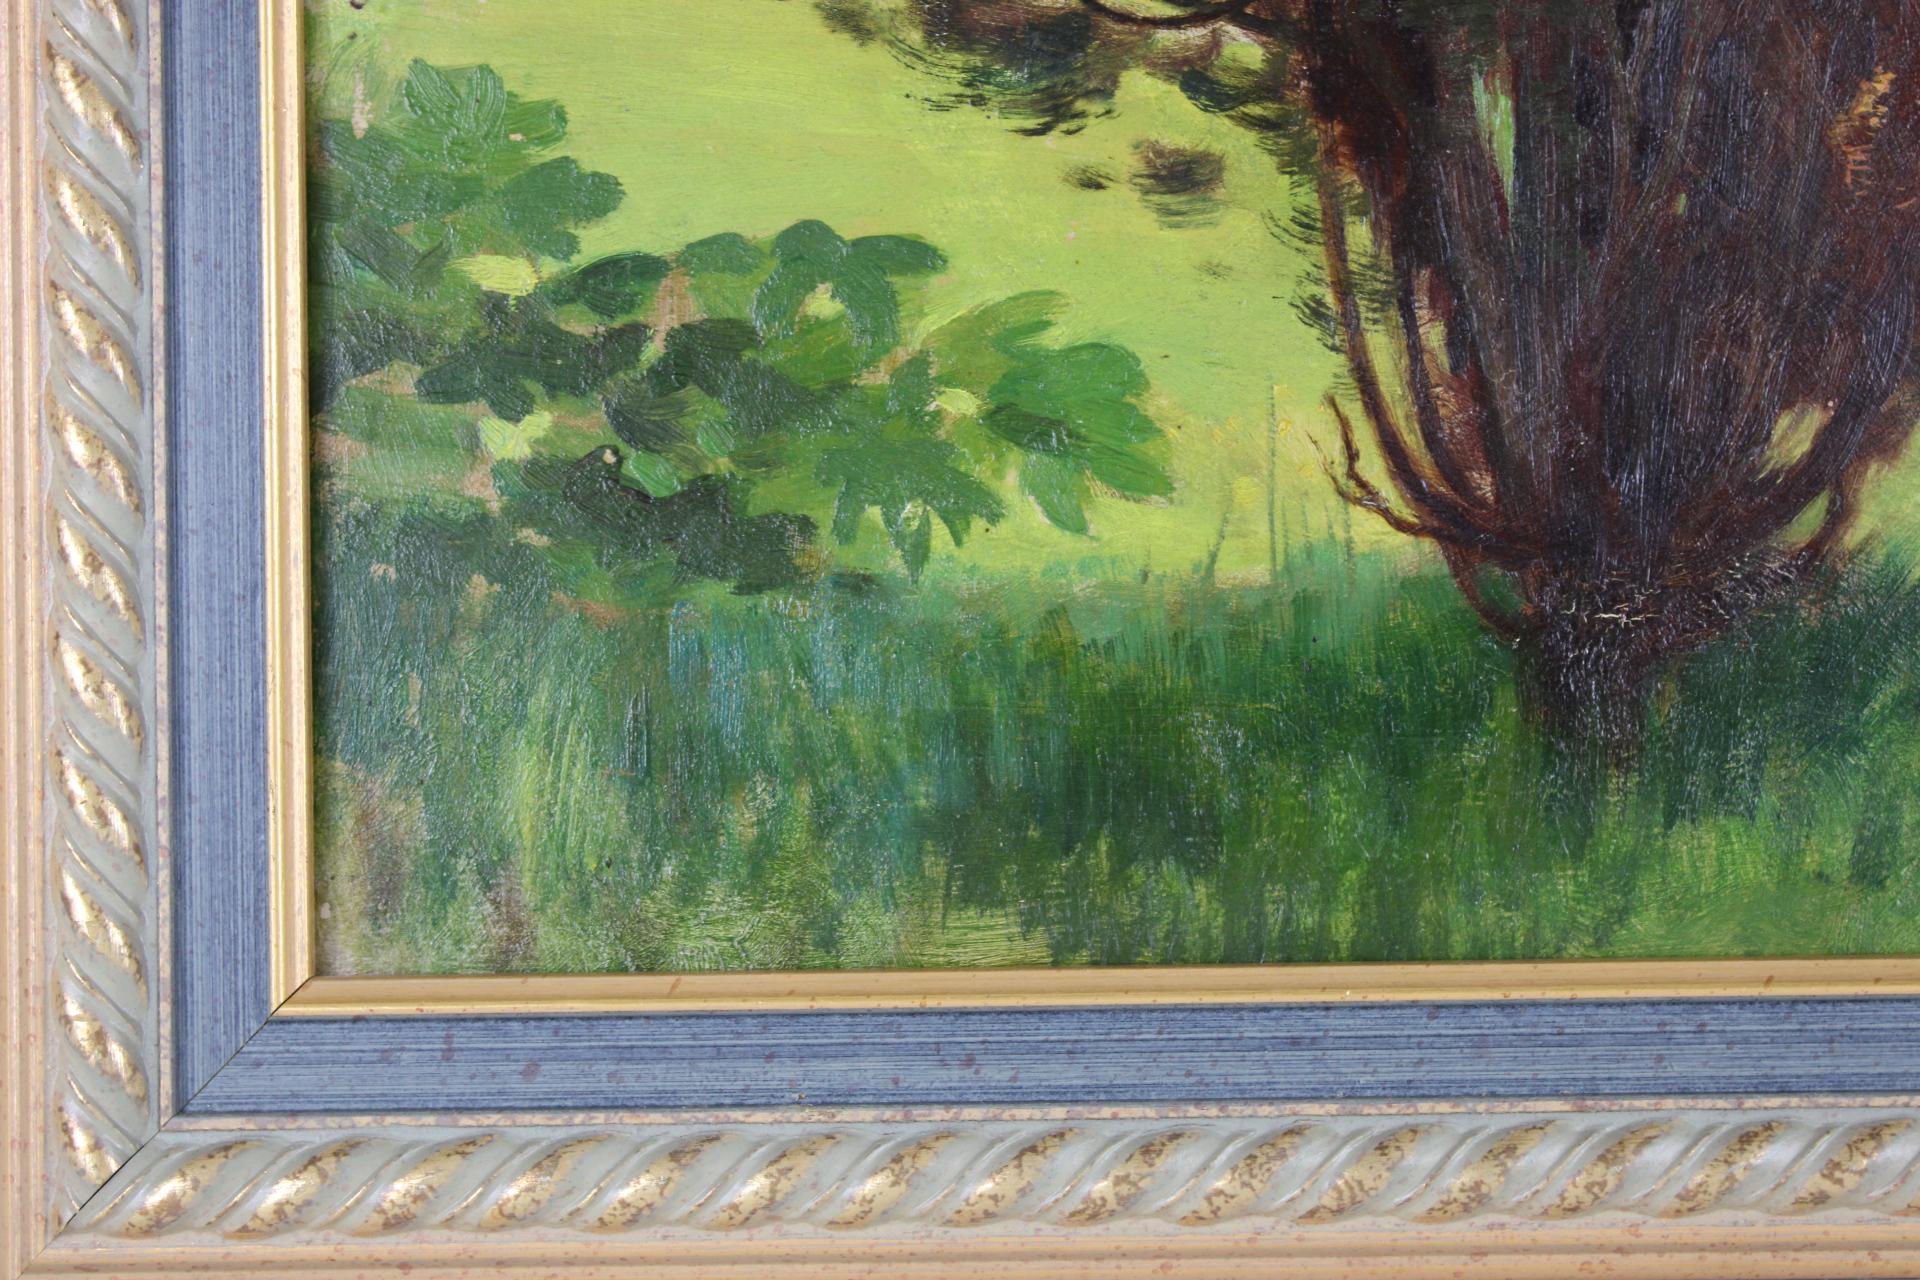 *Die Abmessungen umfassen den Rahmen

Dieses kleine Werk von Émile Louis Thivier (1858-1922) bietet eine grüne Vignette der Natur, die sich durch eine lebendige Note und eine reiche Farbpalette auszeichnet und an die Faszination des Impressionismus